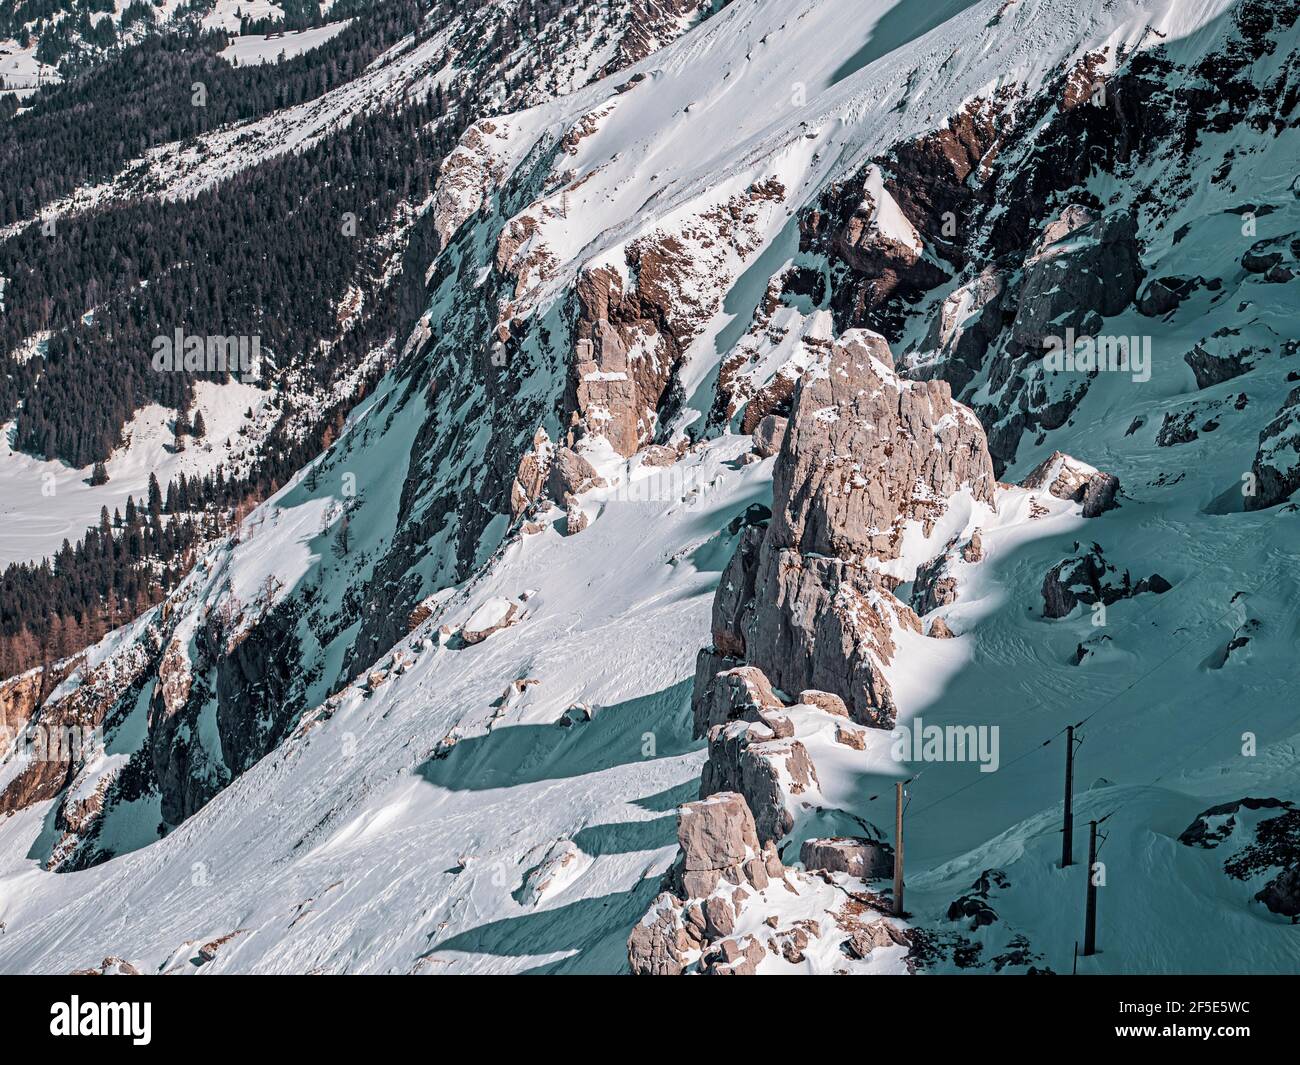 Bellissime cime innevate nel villaggio montano di Les Diableret in Svizzera. Foto Stock